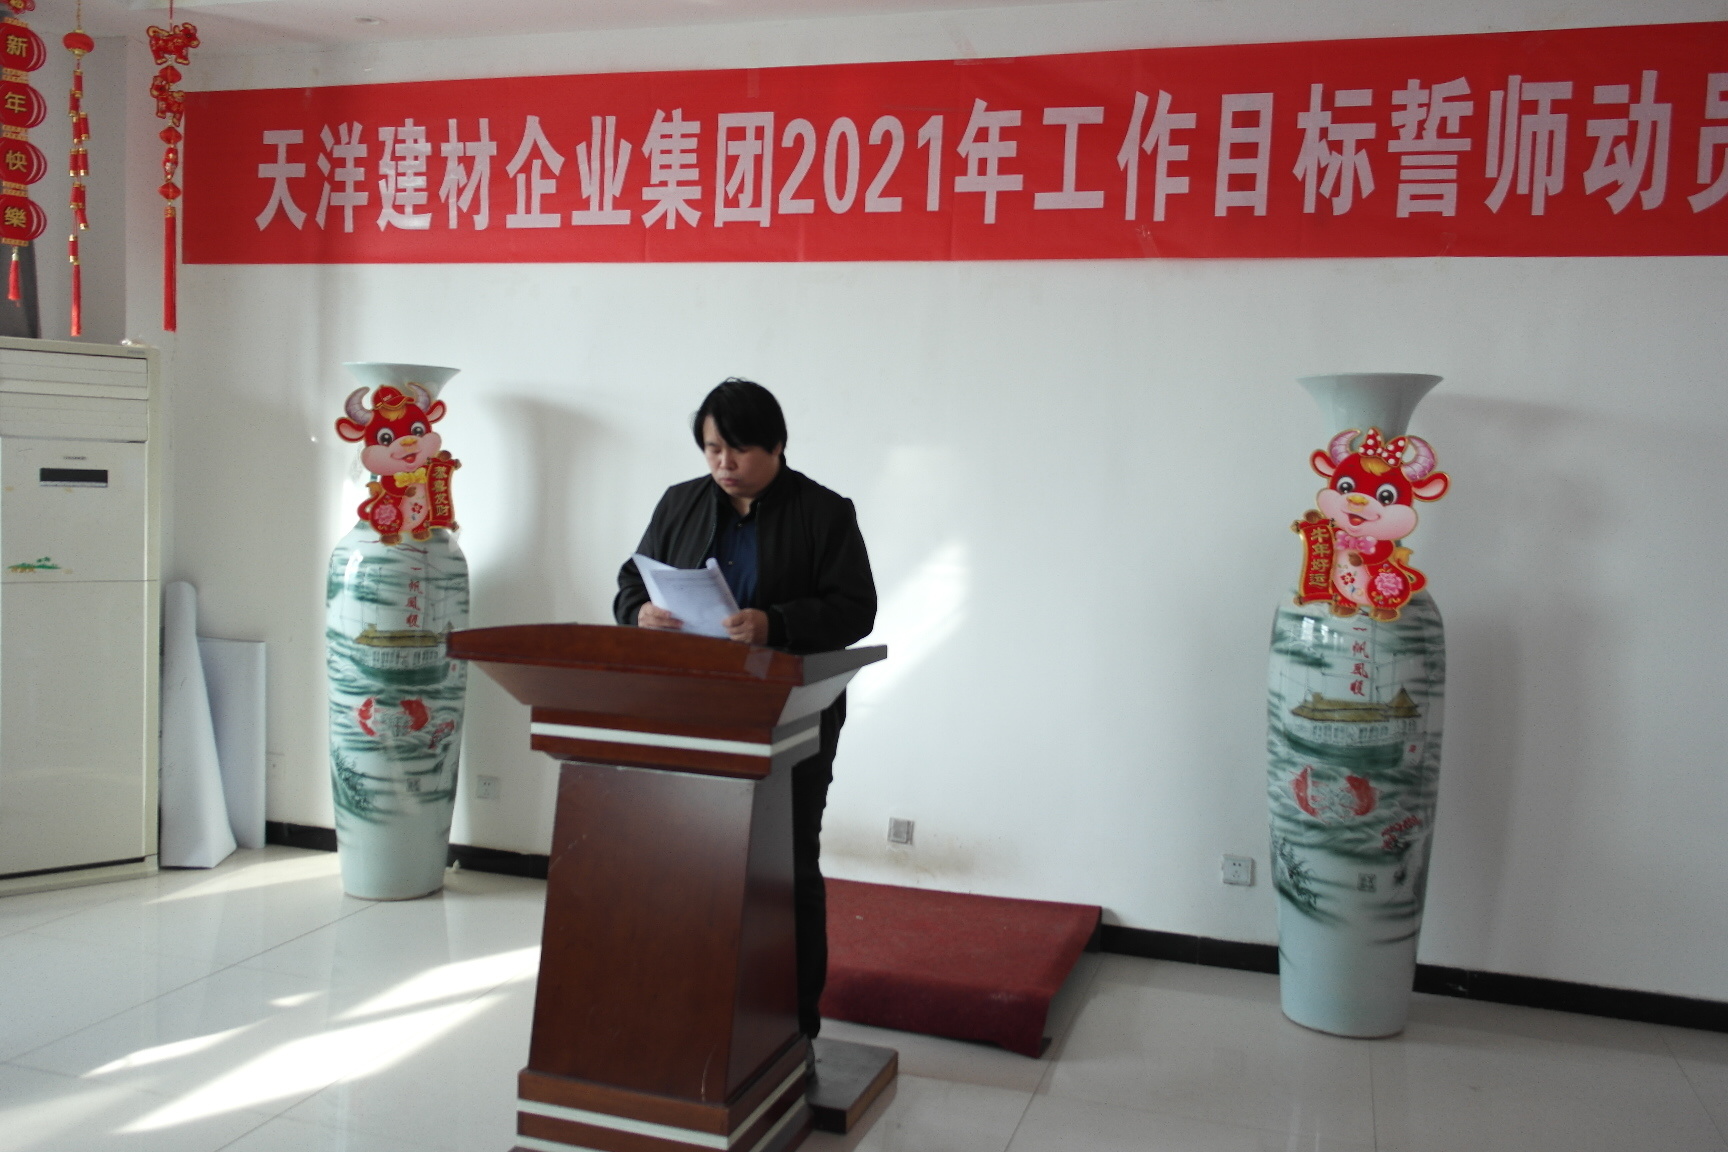 光固化生产厂薛部长宣读天洋企业集团2021工作目标纲要